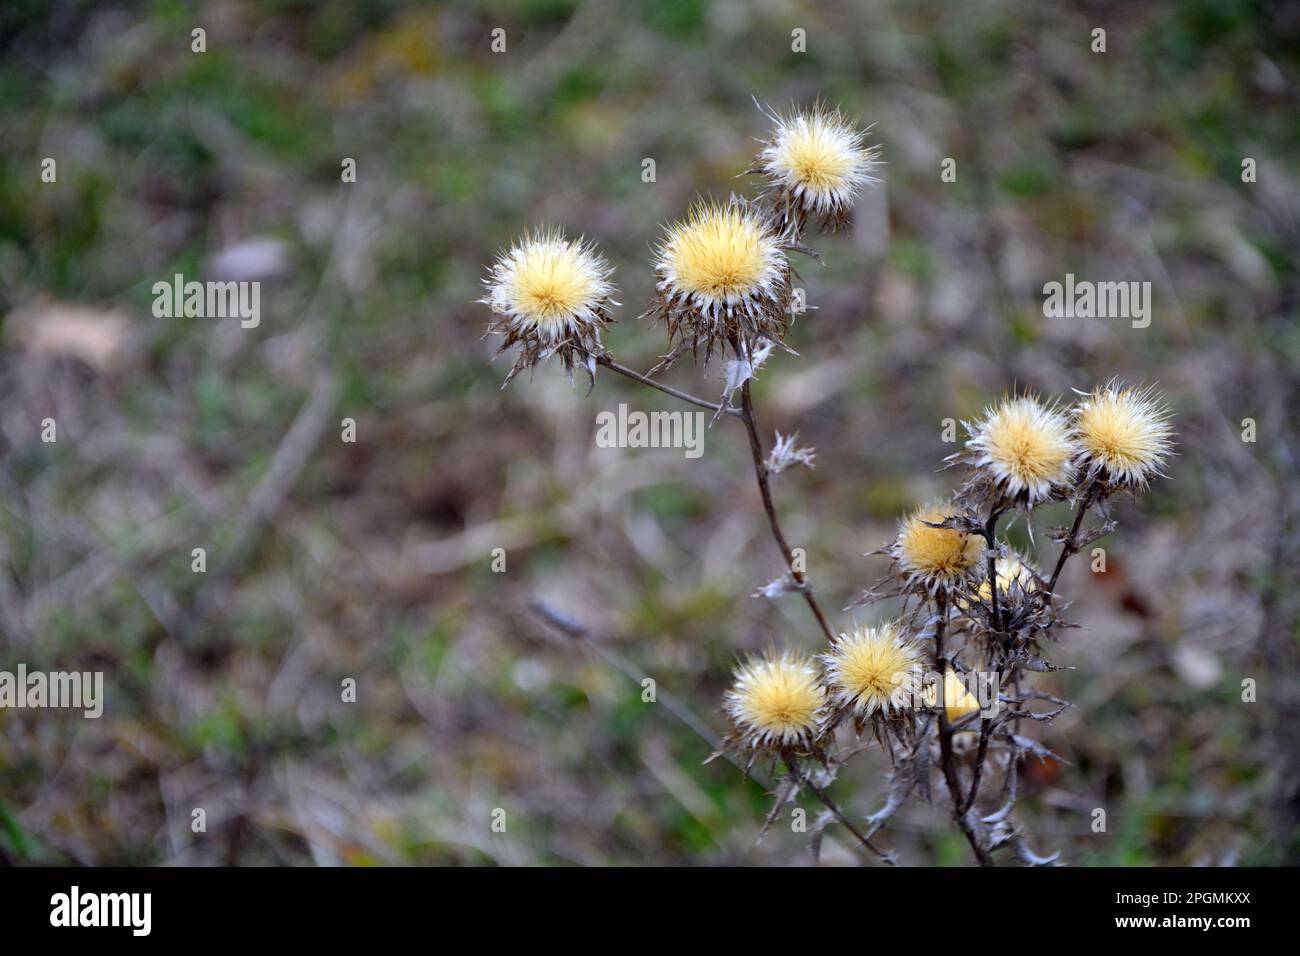 Primo piano dei fiori gialli del carlino vegetale invasivo (Carlina vulgaris) all'inizio della primavera. Immagine orizzontale con messa a fuoco selettiva Foto Stock